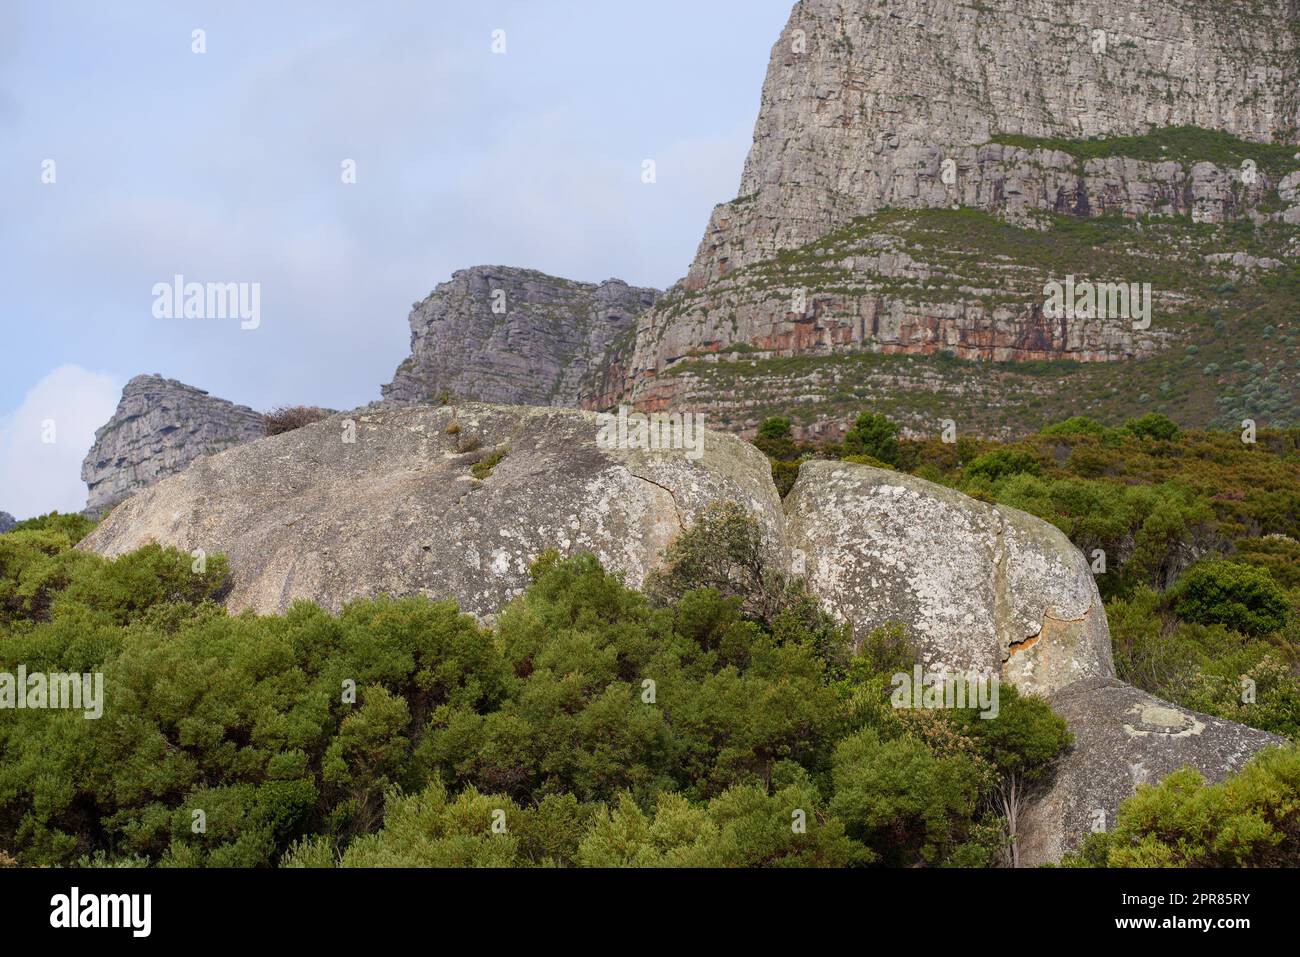 Vista panoramica di Lions Head a città del Capo, in Sudafrica, durante un giorno. Bellissime montagne contro un cielo nuvoloso. Viaggiare ed esplorare madre natura attraverso avventure escursionistiche in estate Foto Stock